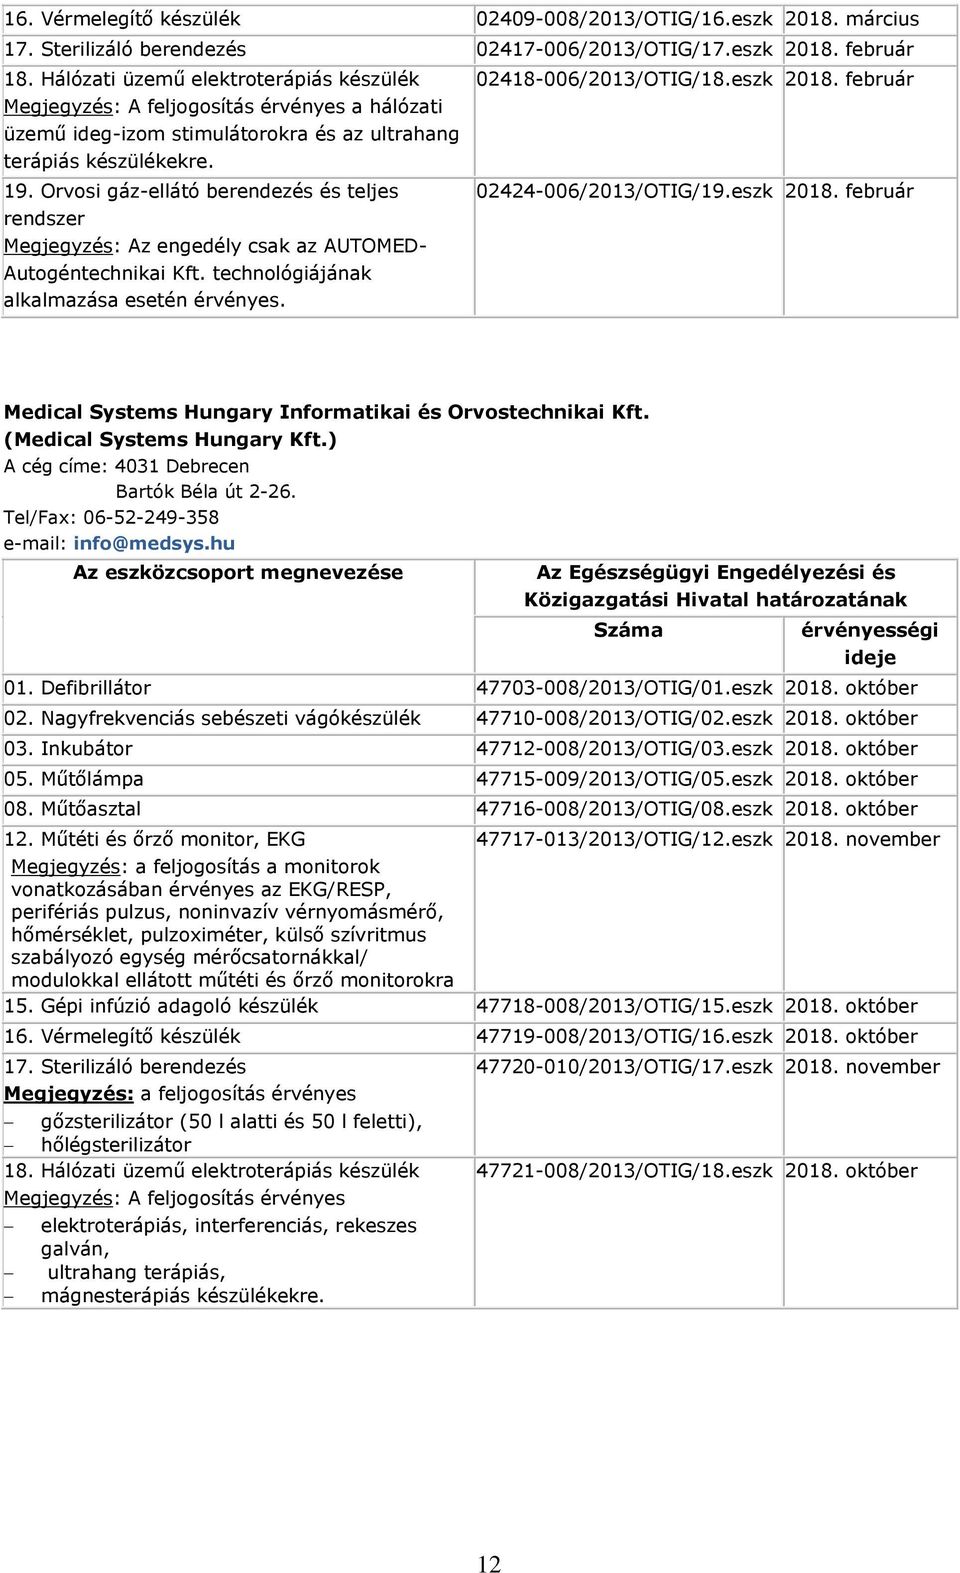 Orvosi gáz-ellátó berendezés és teljes rendszer Megjegyzés: Az engedély csak az AUTOMED- Autogéntechnikai Kft. technológiájának alkalmazása esetén érvényes. 02418-006/2013/OTIG/18.eszk 2018.